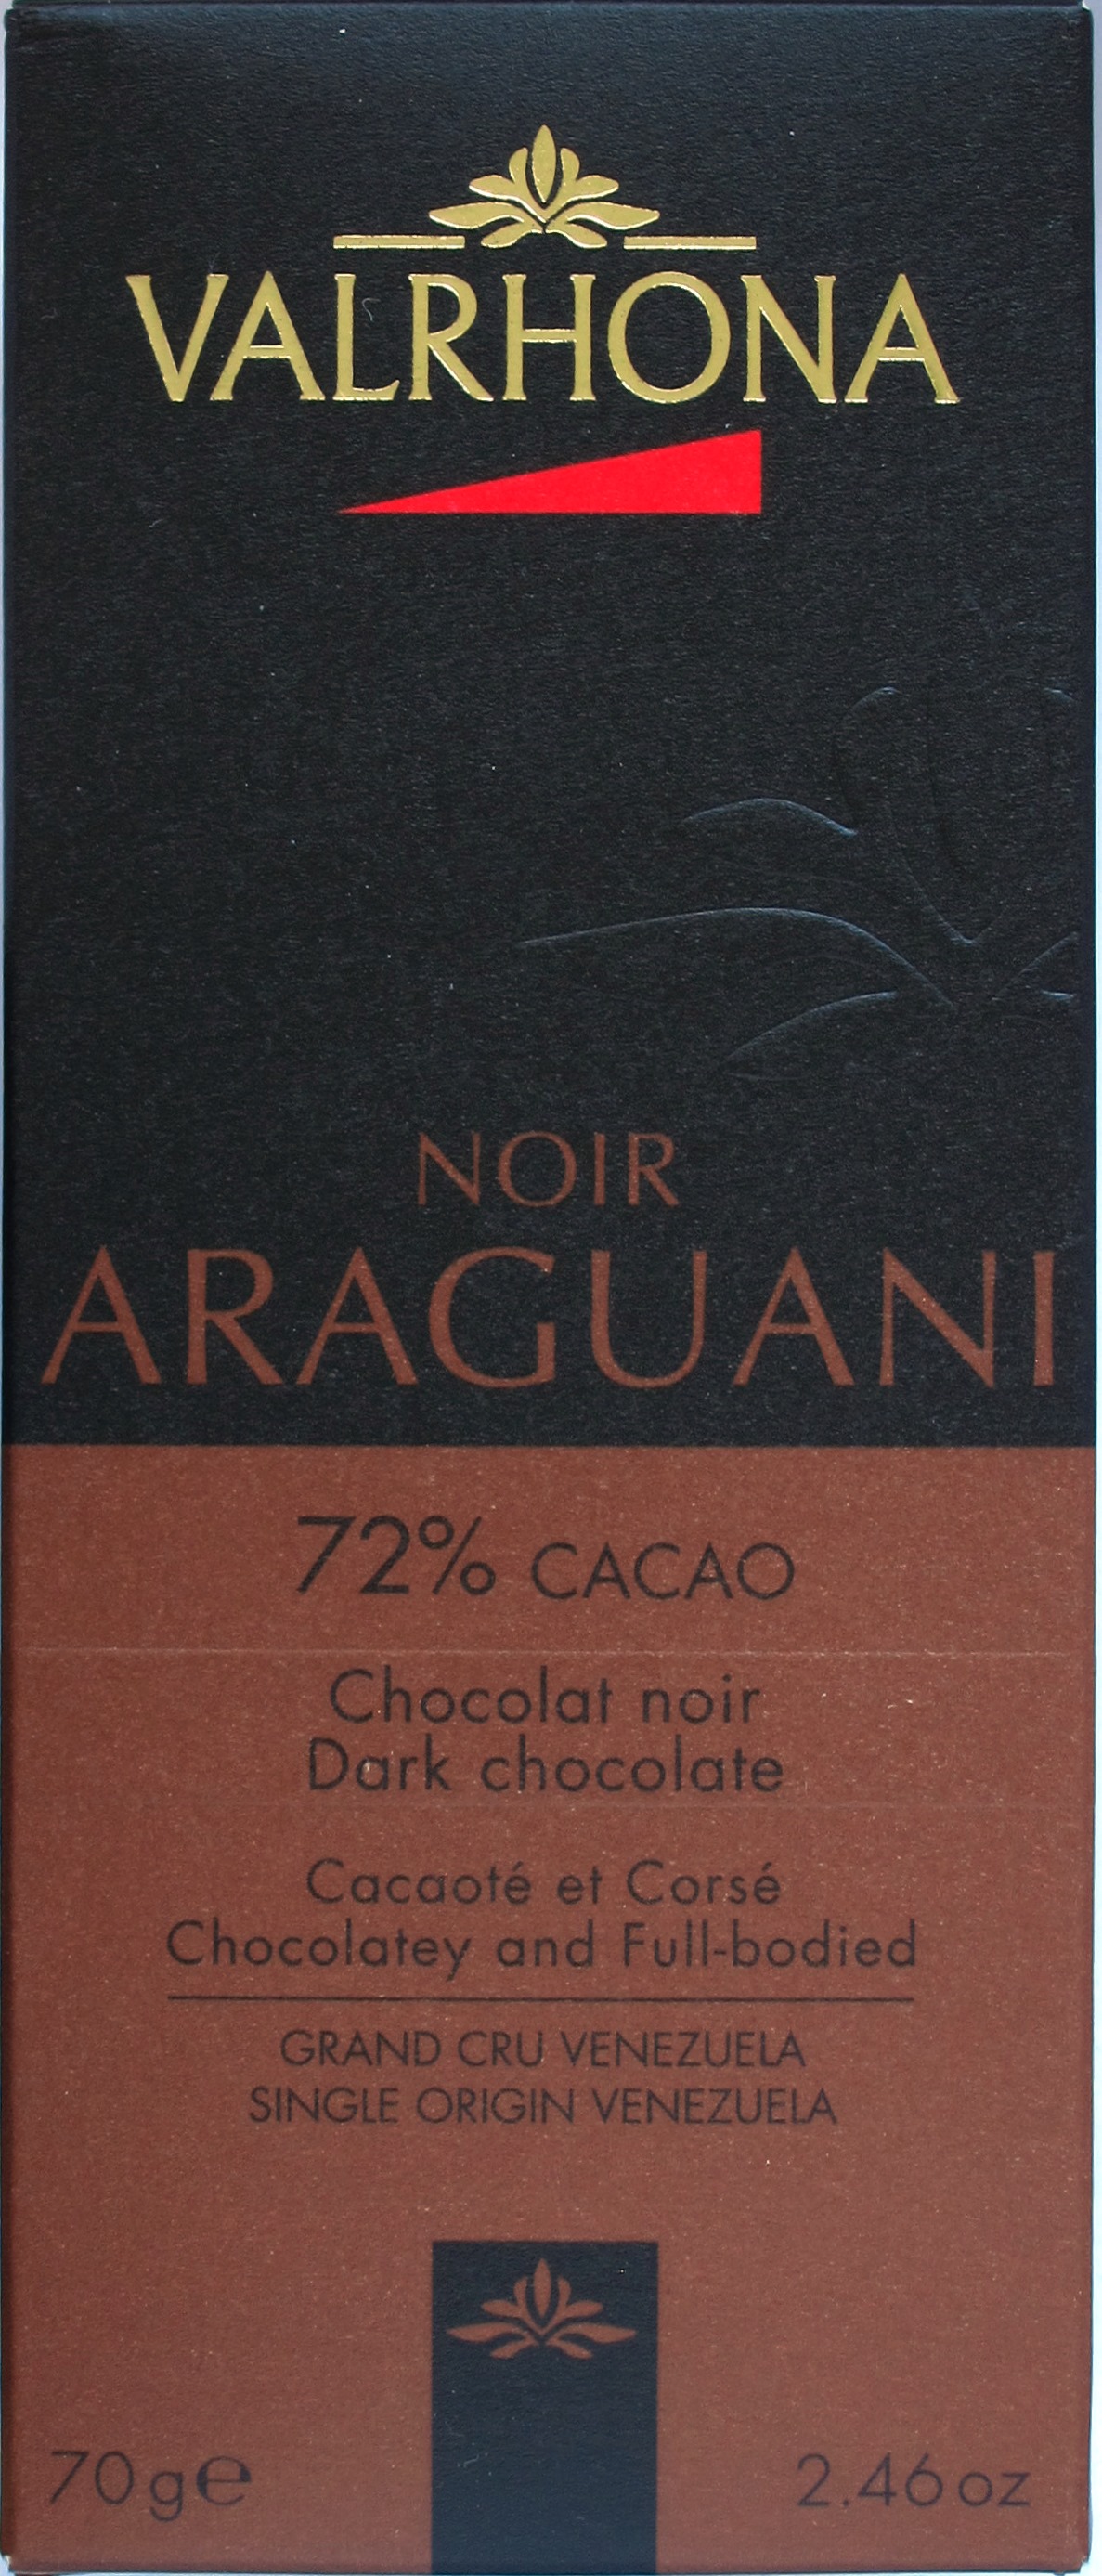 Bitterschokolade Valrhona Araguani